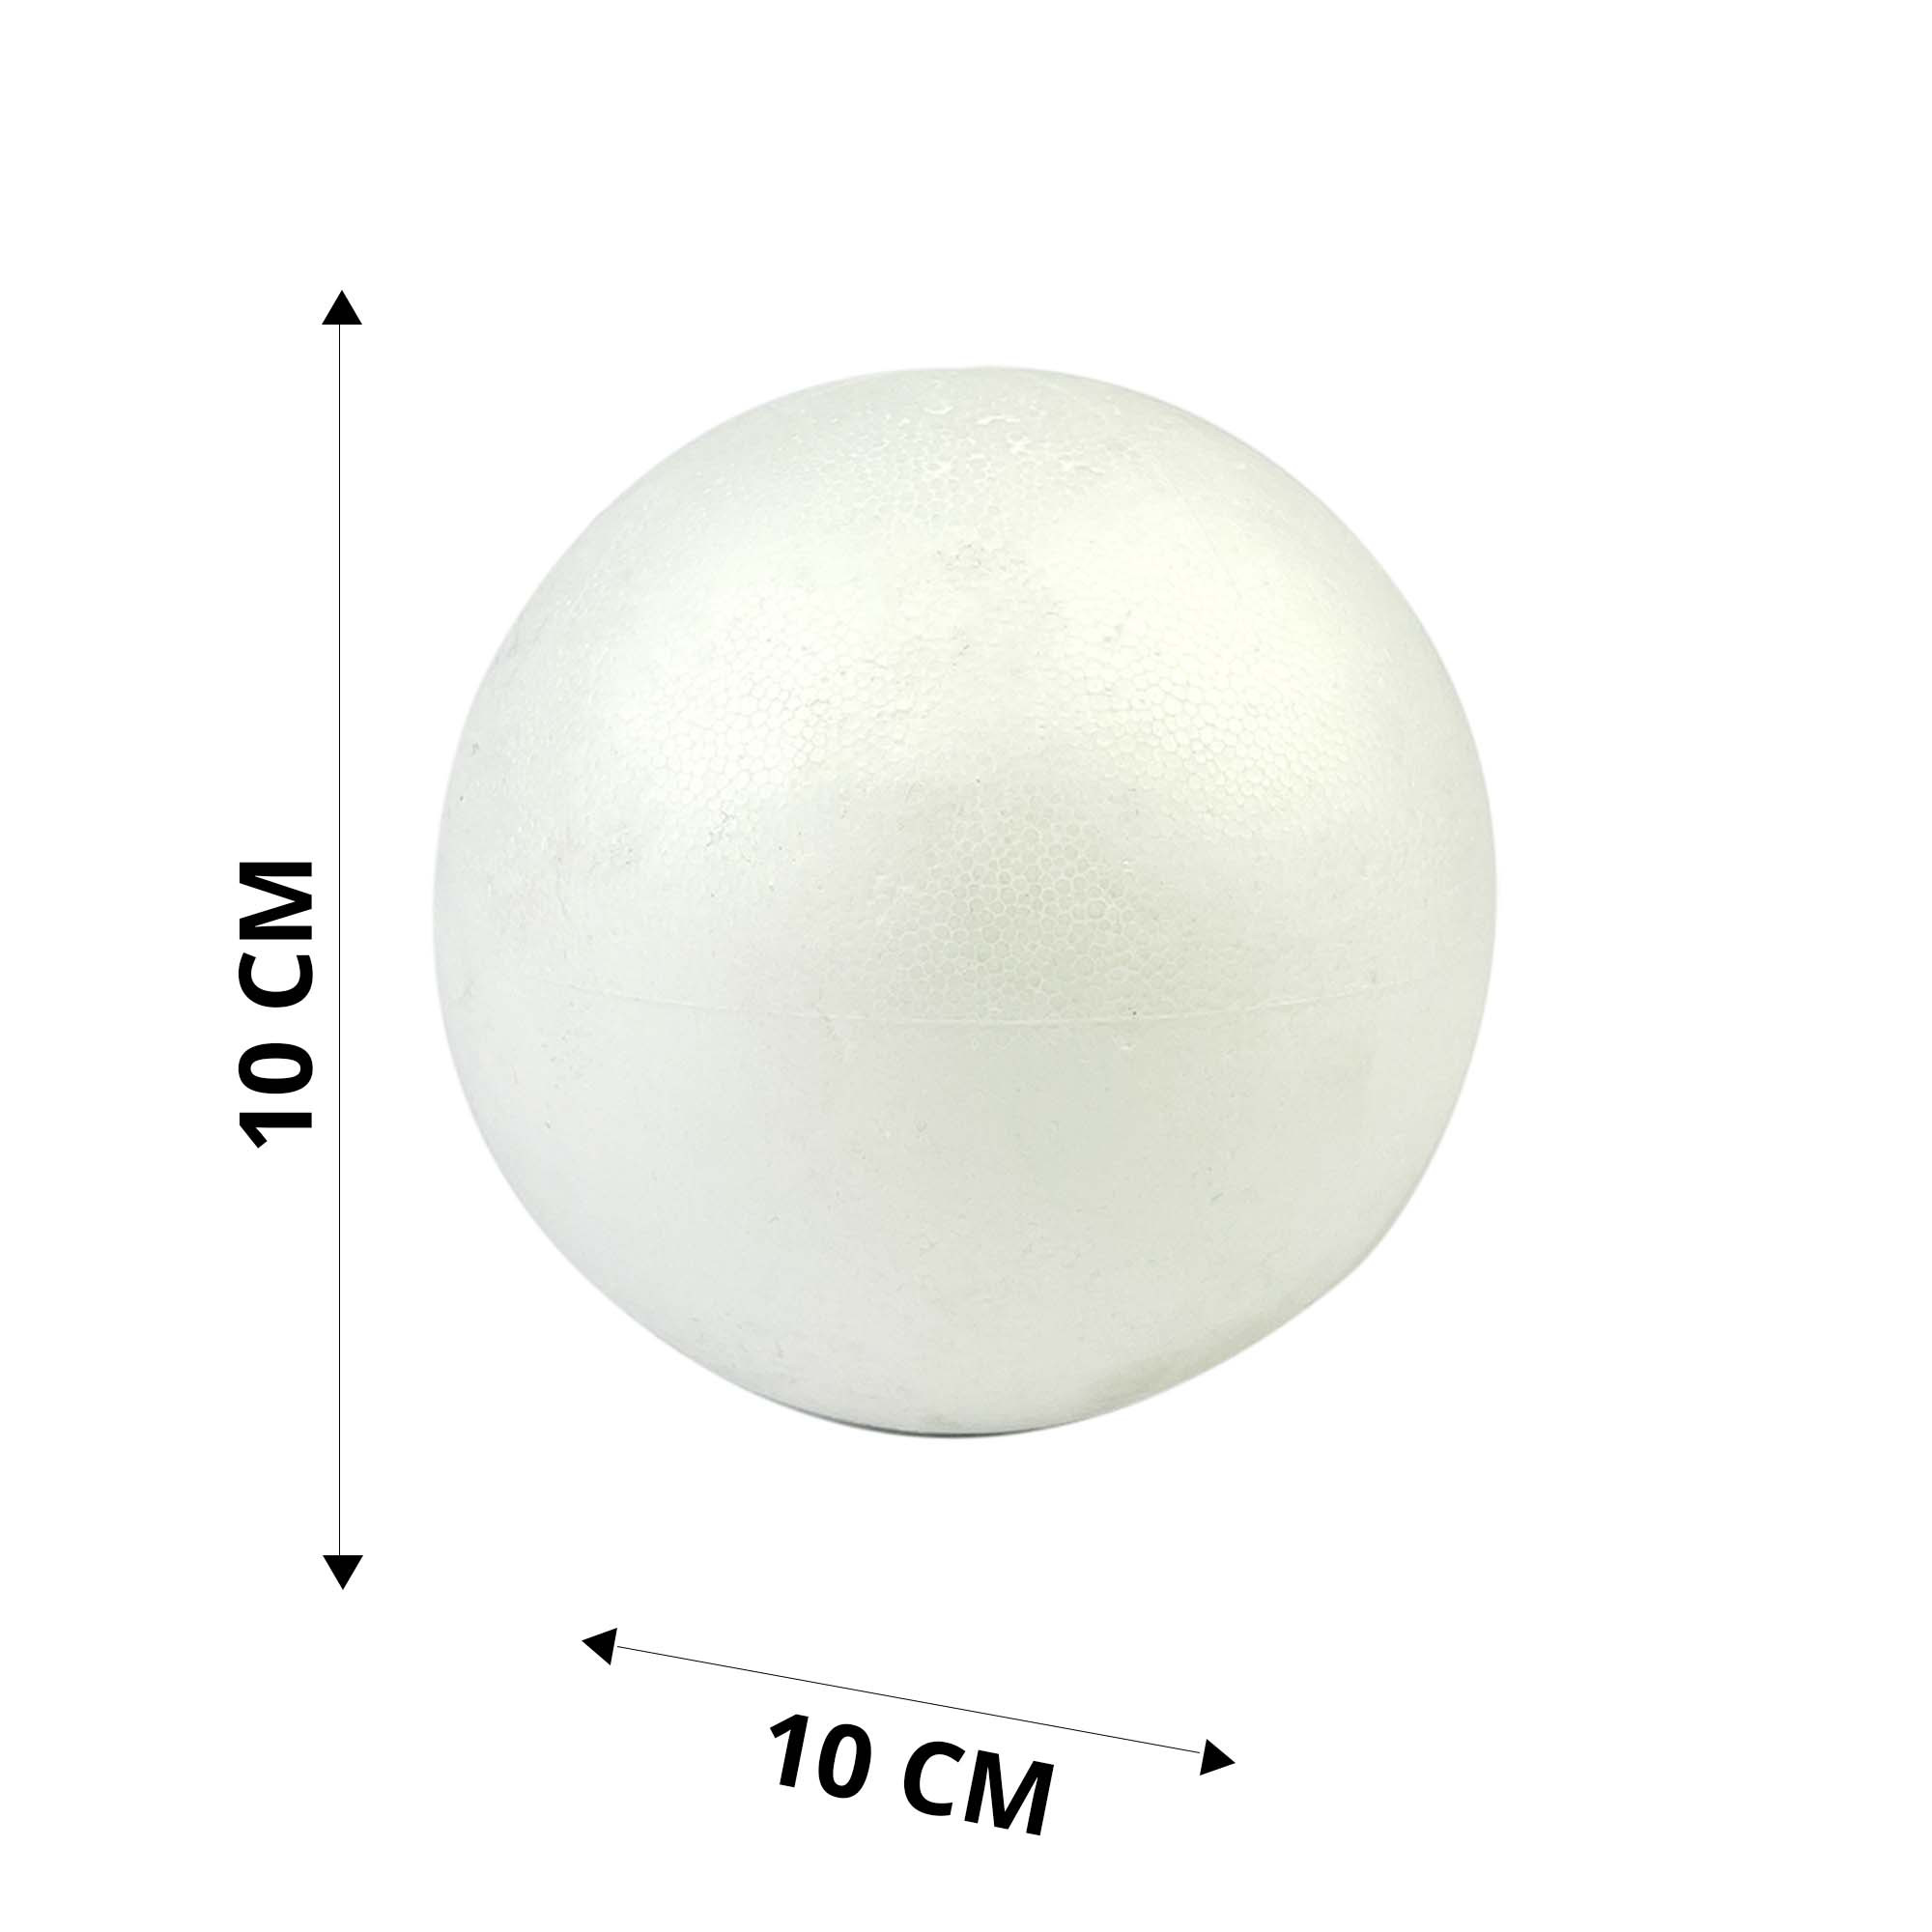 https://www.tricotcafe.com/28238/polistirolo-forma-di-sfera-misura-10cm-colore-bianco-ideali-per-il-patchwork.jpg